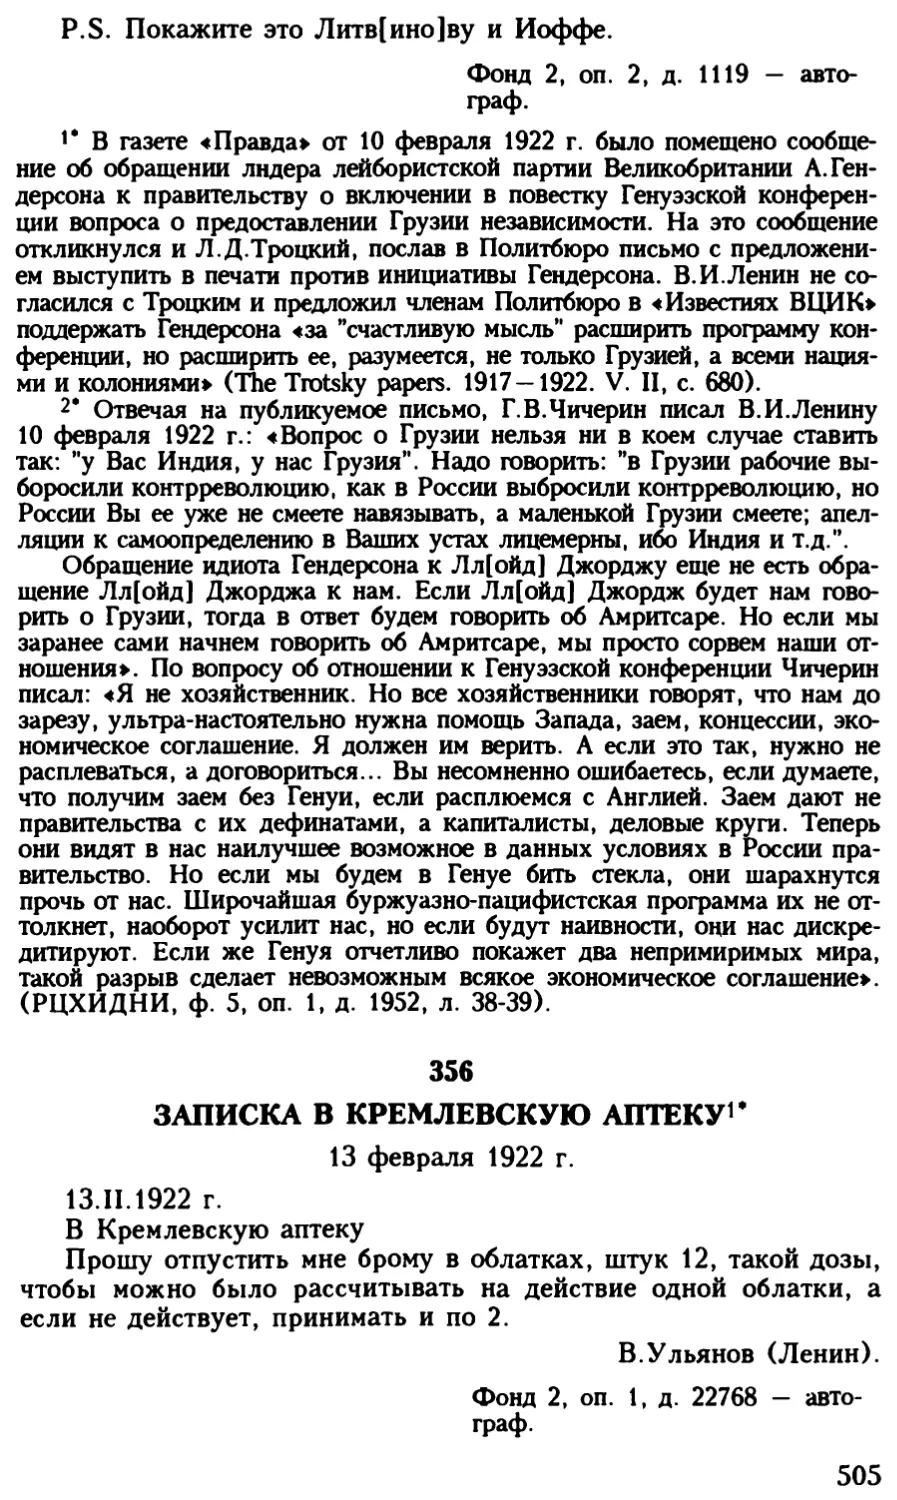 356. Записка в кремлевскую аптеку. 13 февраля 1922 г